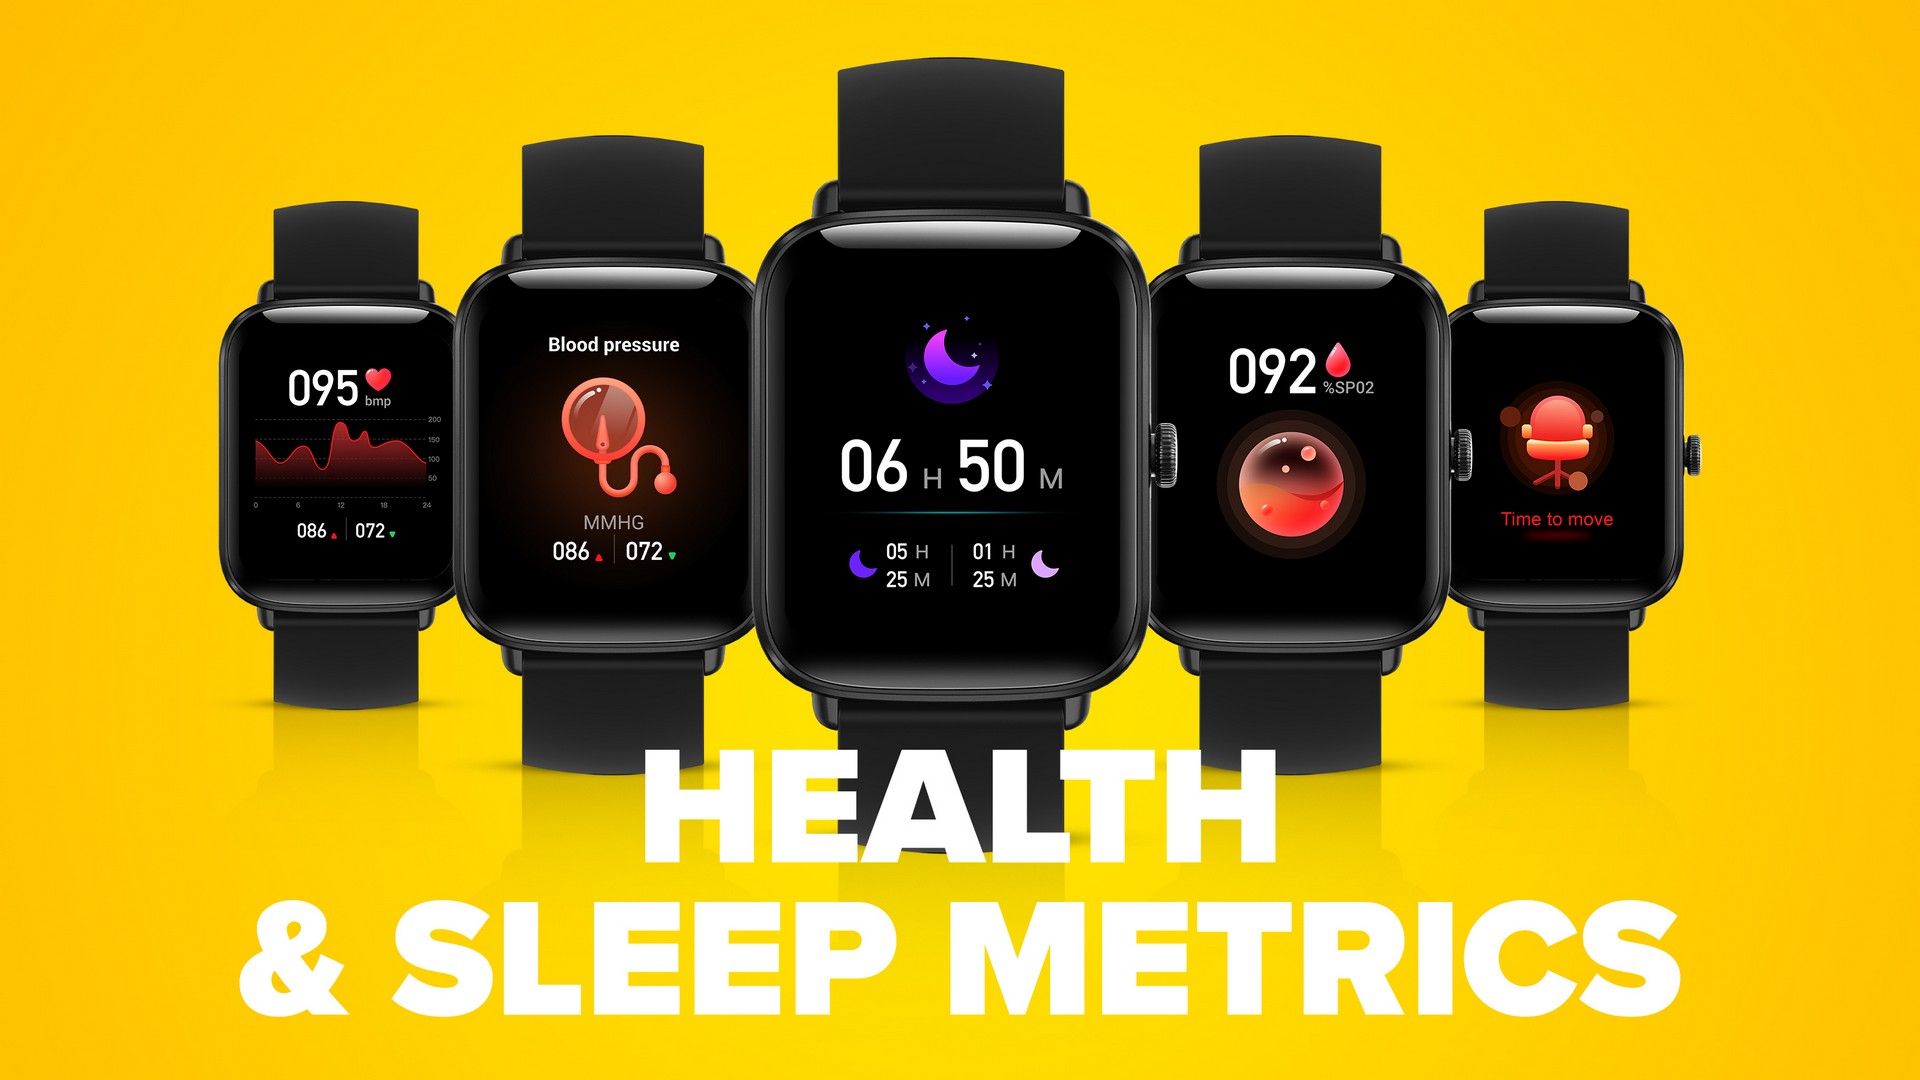 Chytré hodinky Niceboy Watch Lite 3 hlídají, kolik hodin jste spali, zdali se nacházíte ve fází lehkého, hlubokého nebo REM spánku i jak byl váš spánek kvalitní.